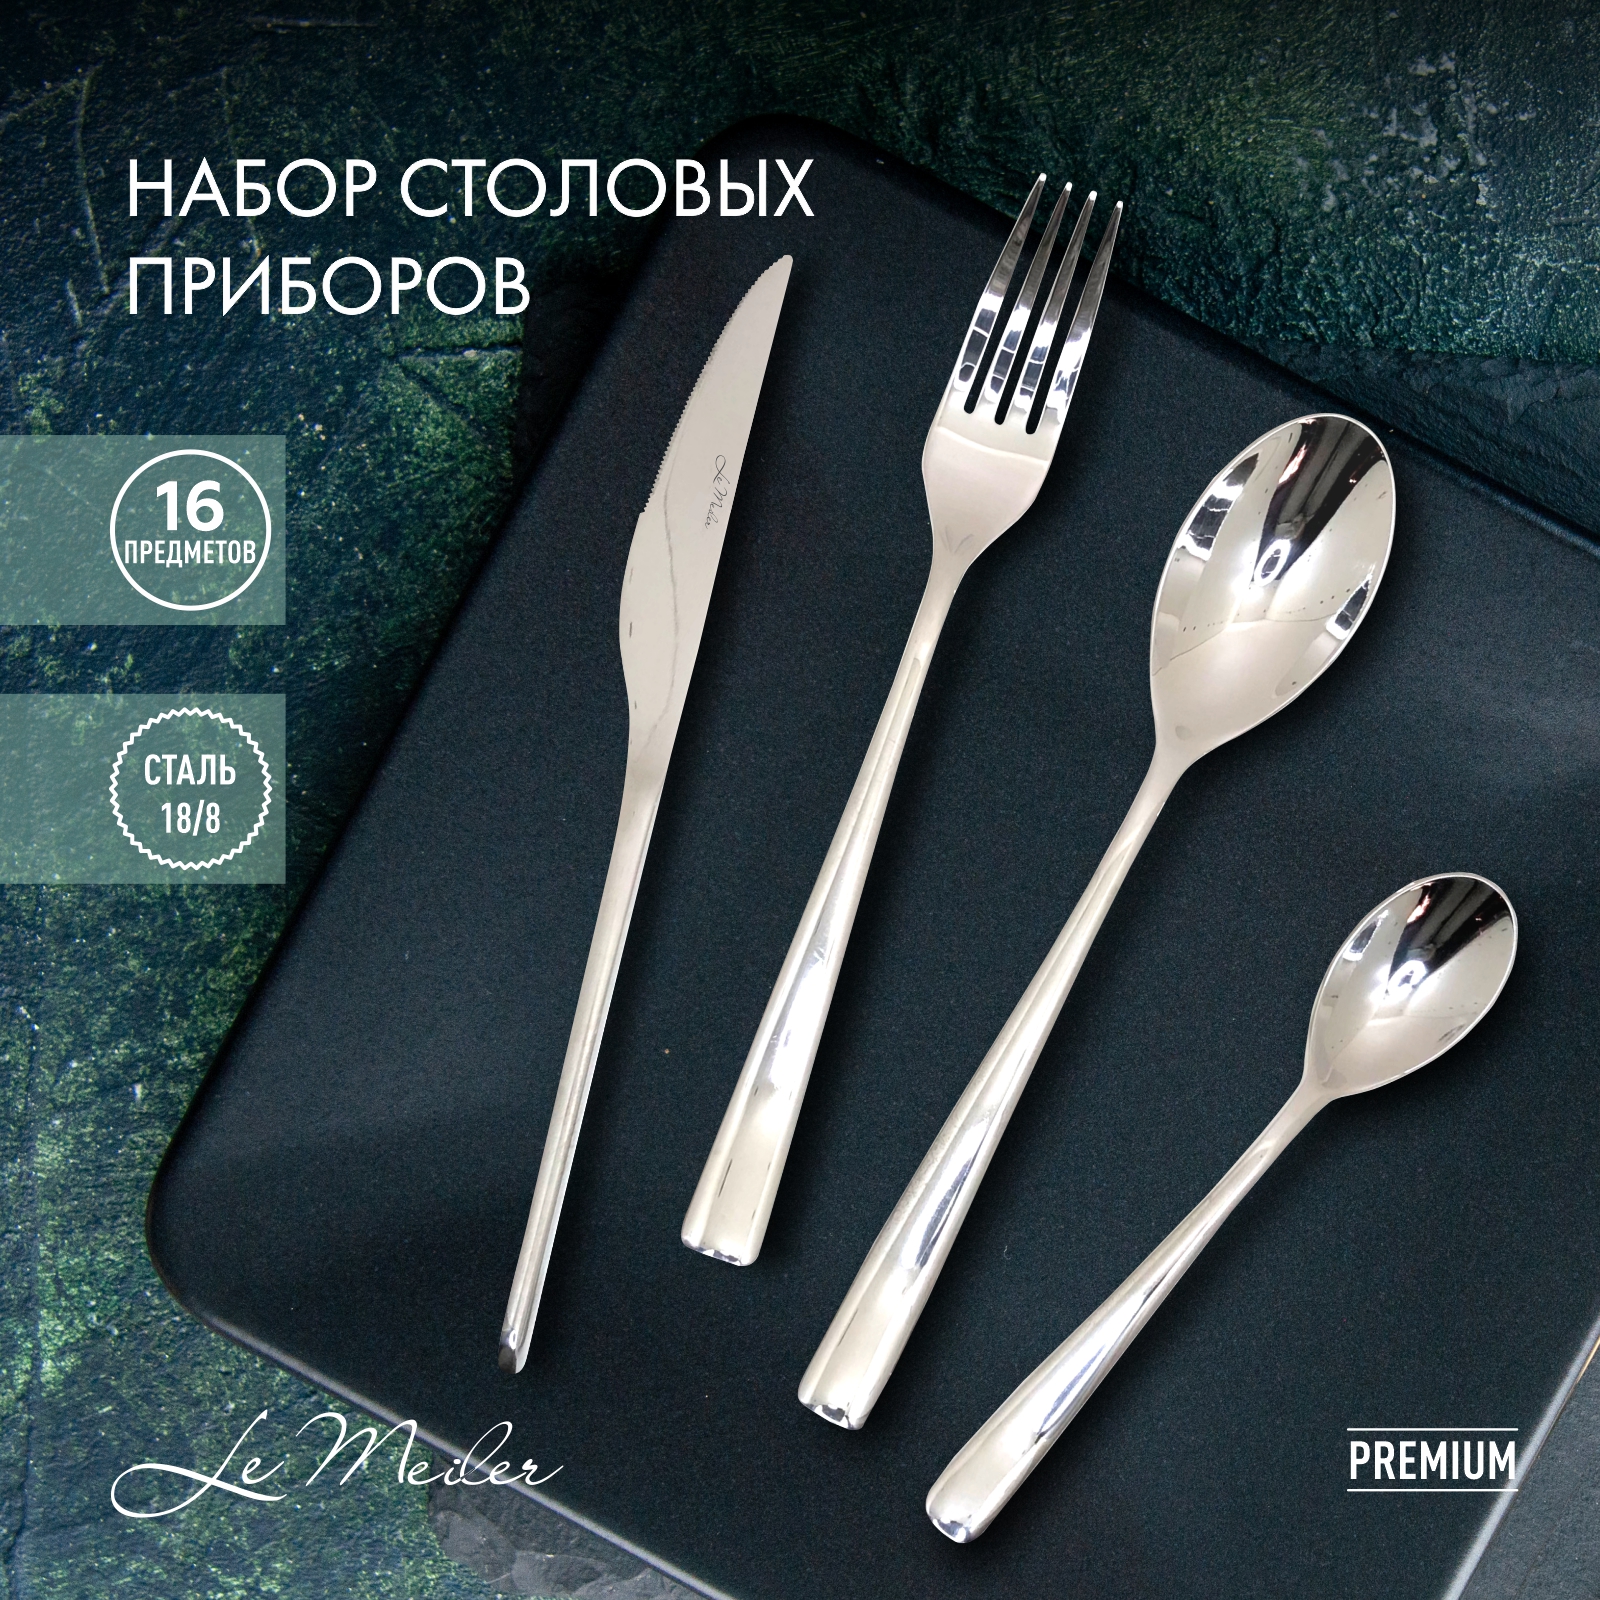 Набор столовых приборов Le Meiler 16 предметов ложки столовые чайные вилки ножи FS-110